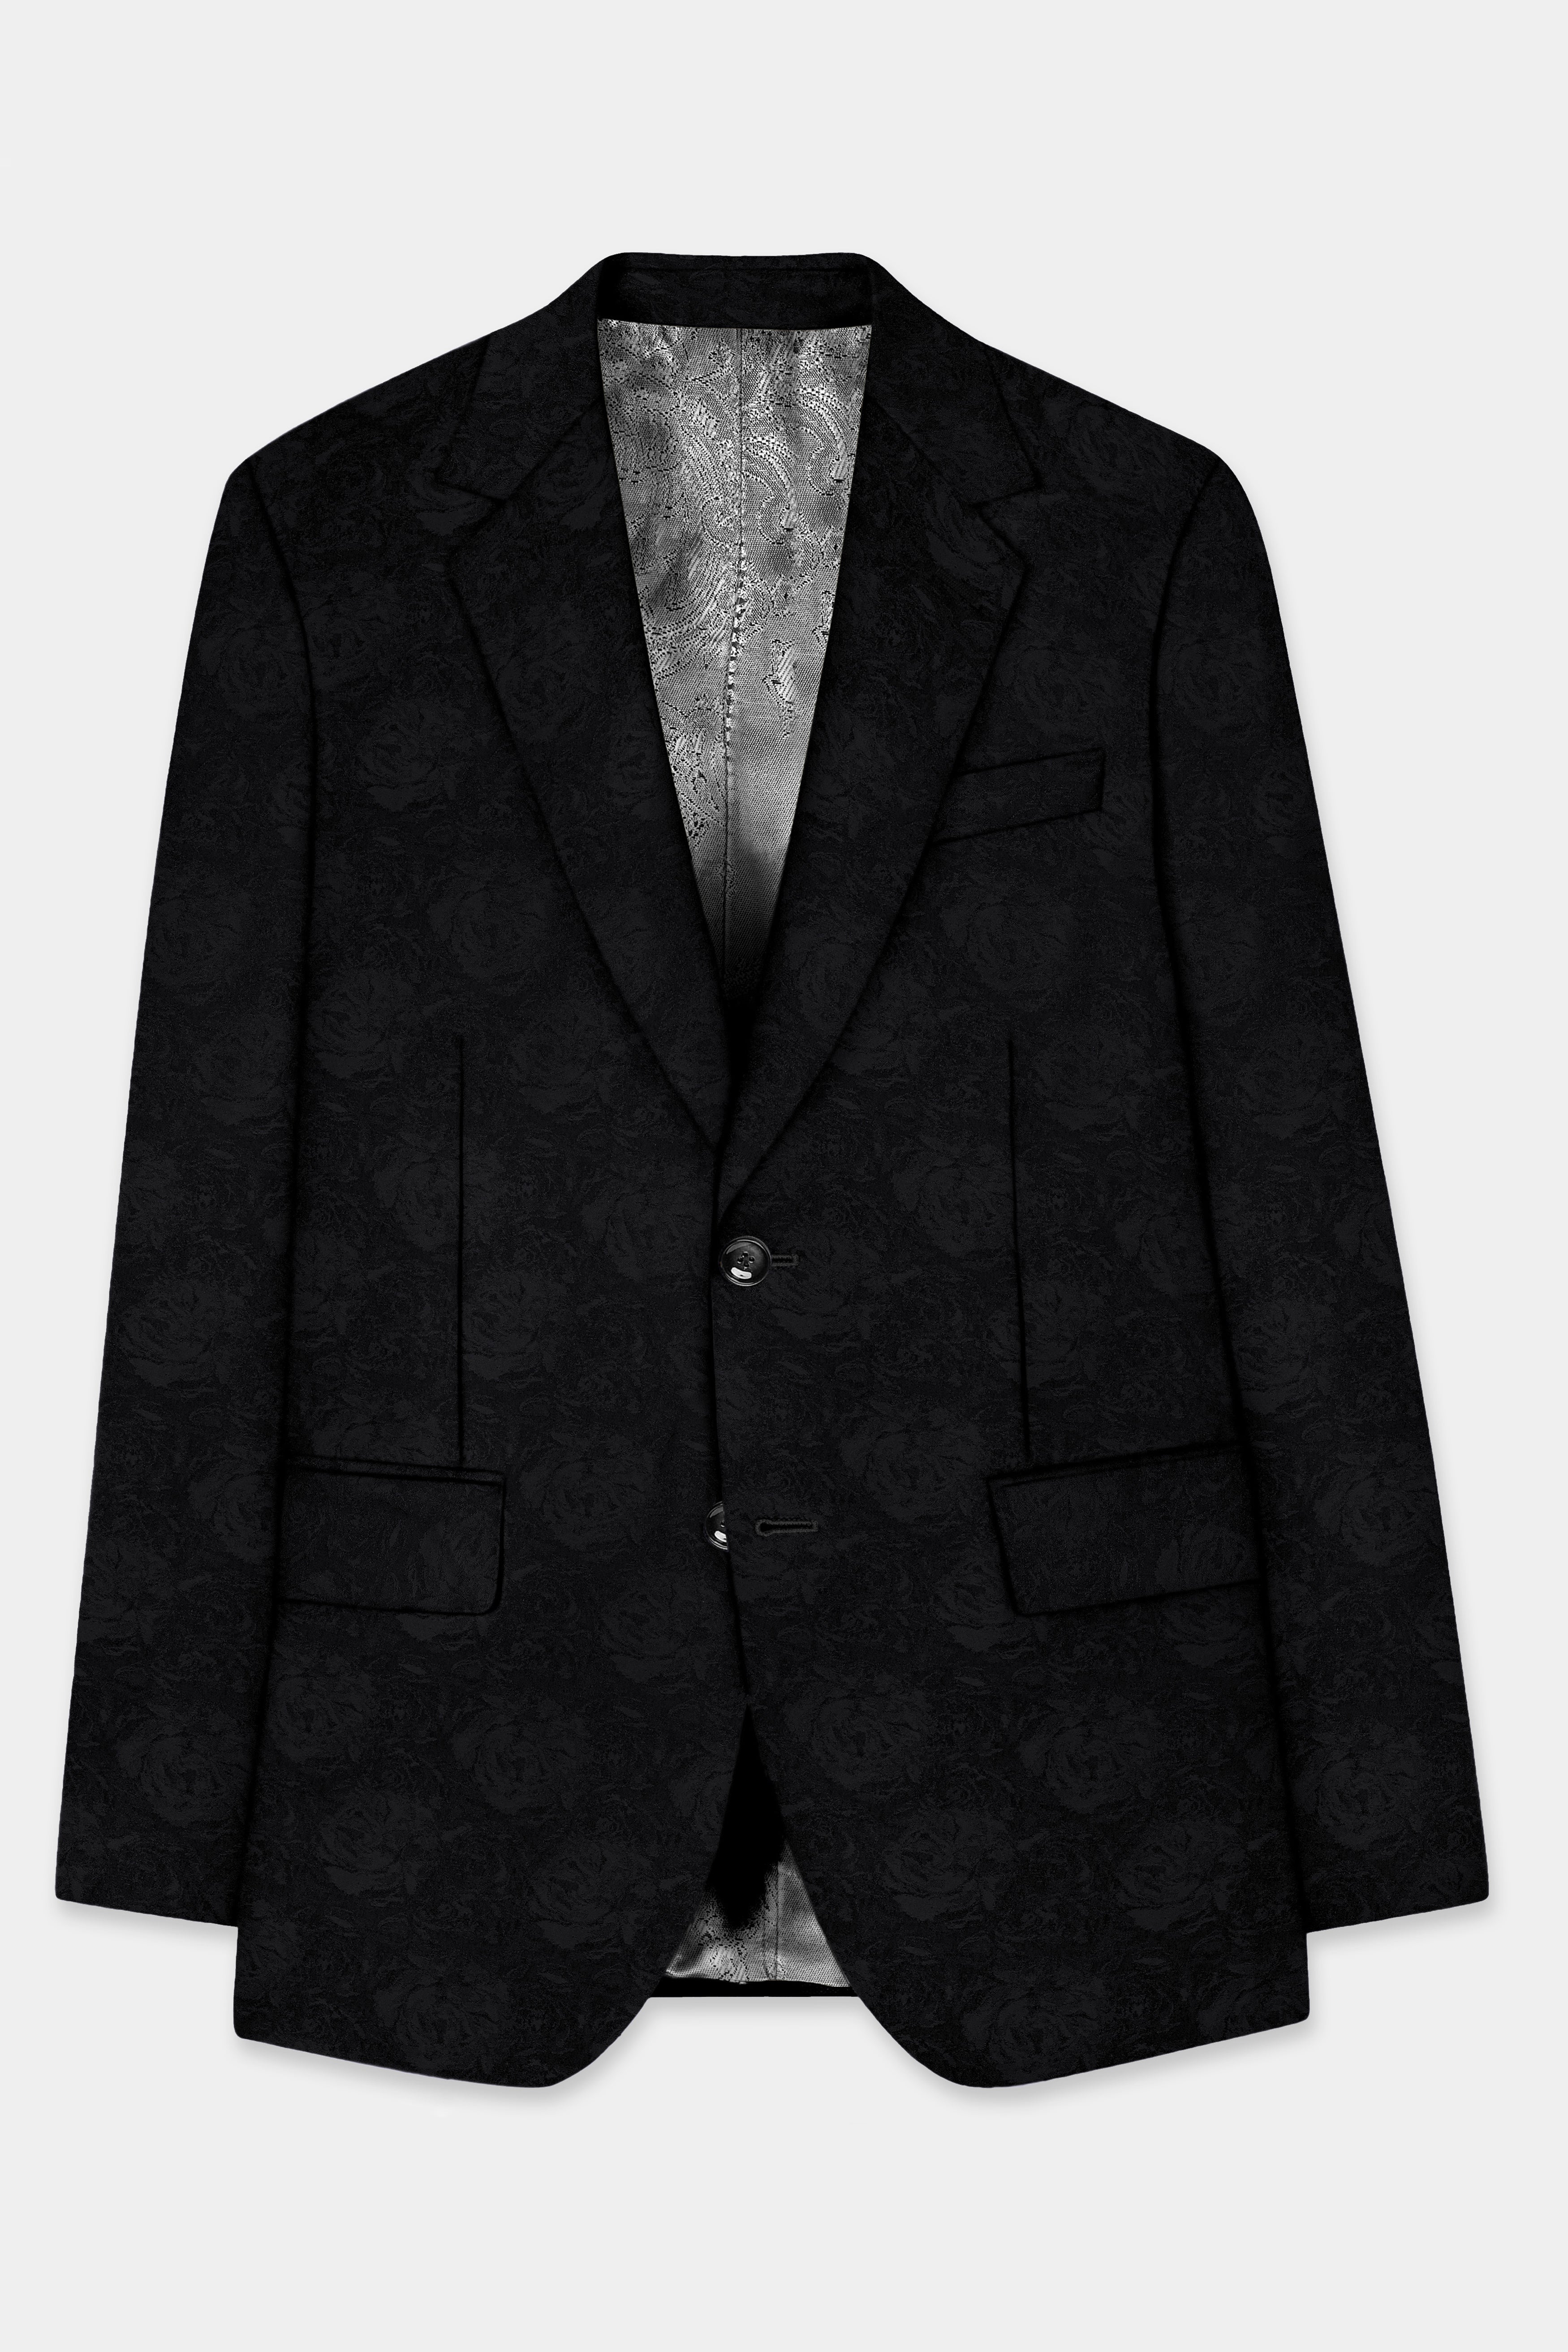 Jade Black Jacquard Textured Single Breasted Suit